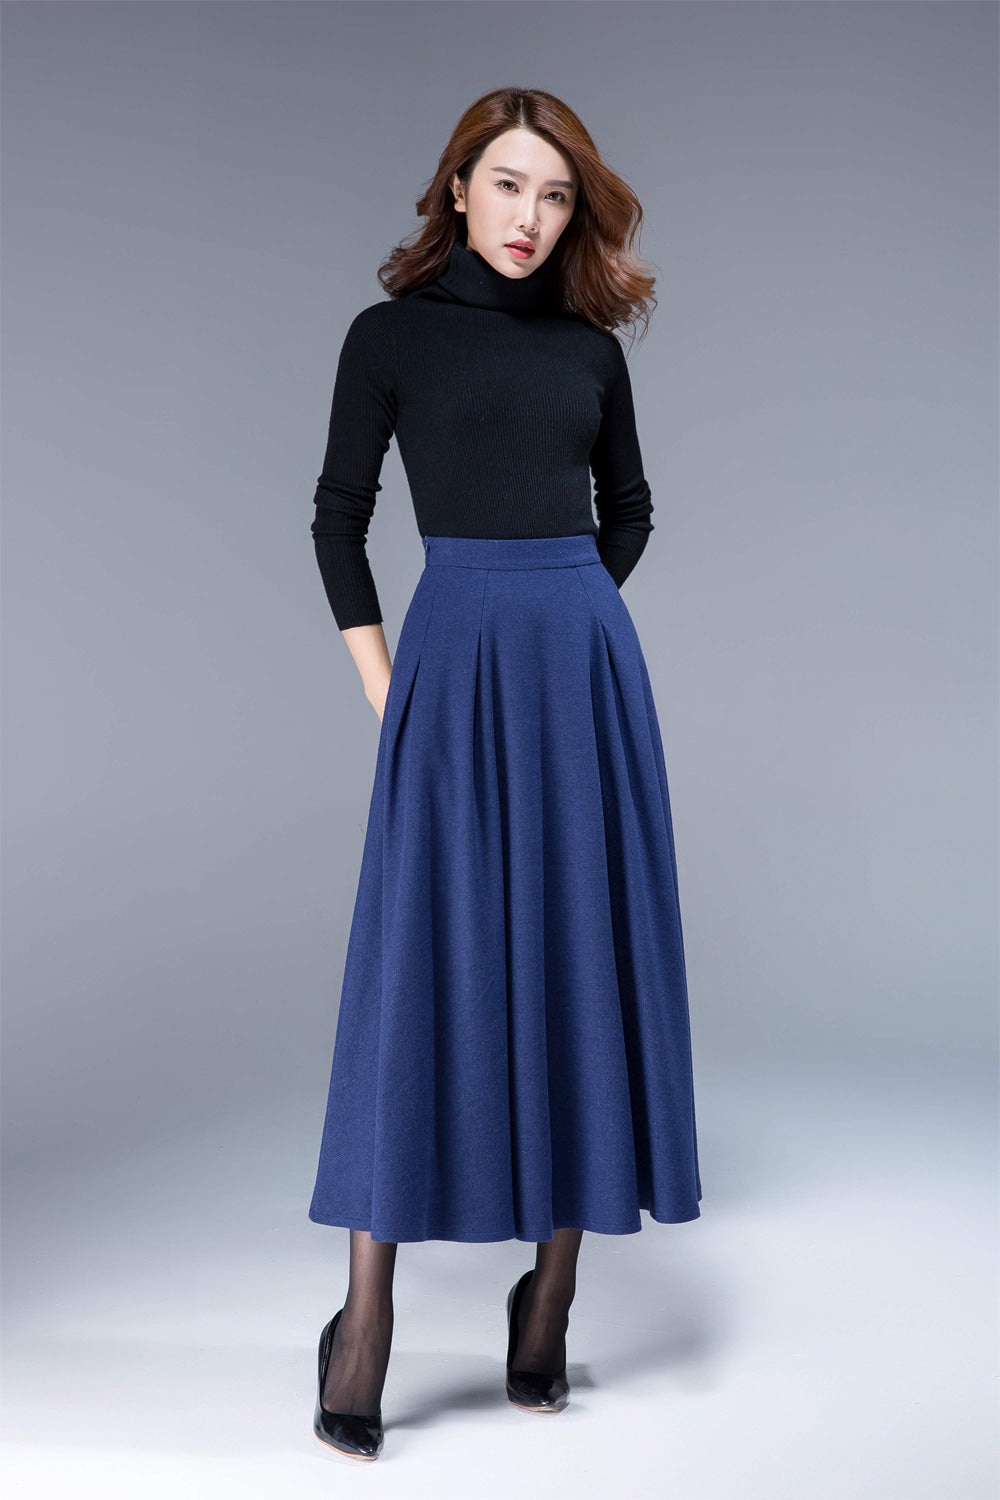 wool skirt,winter skirt, maxi skirt, pleated skirt, pockets skirt  1806